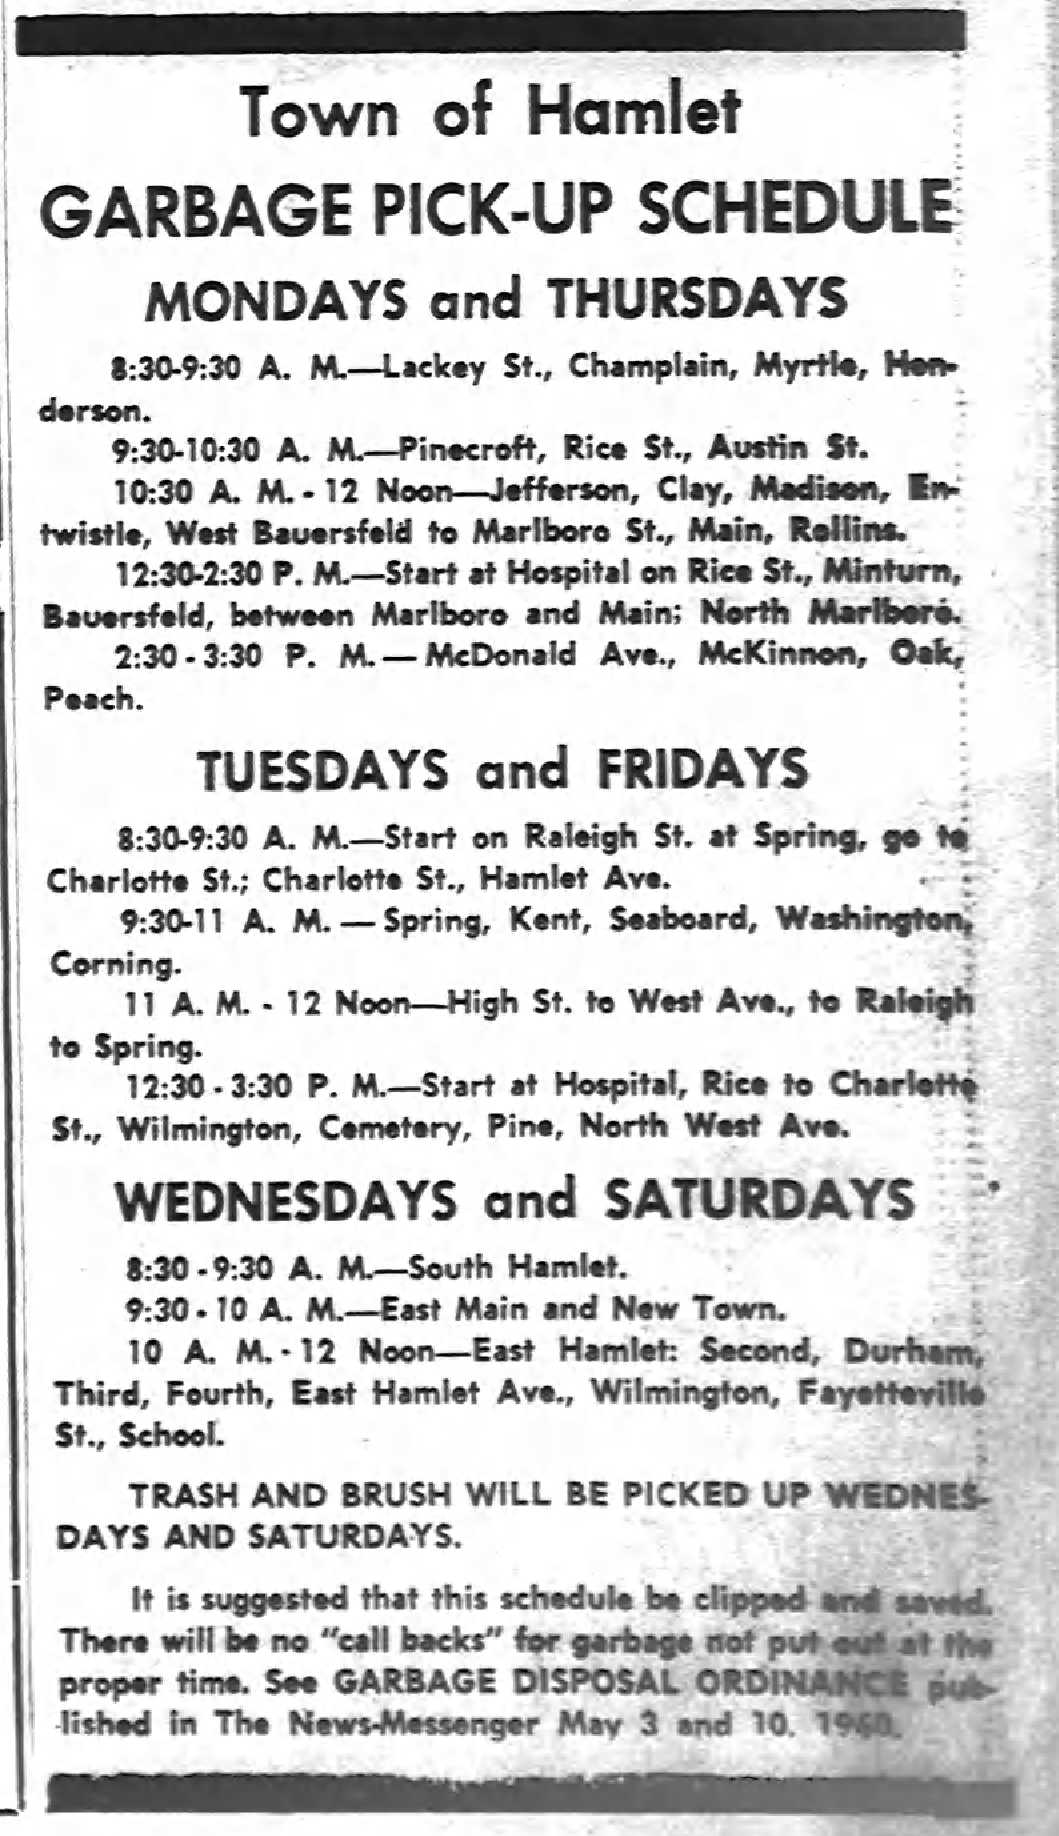 1960 Garbage schedule.jpg